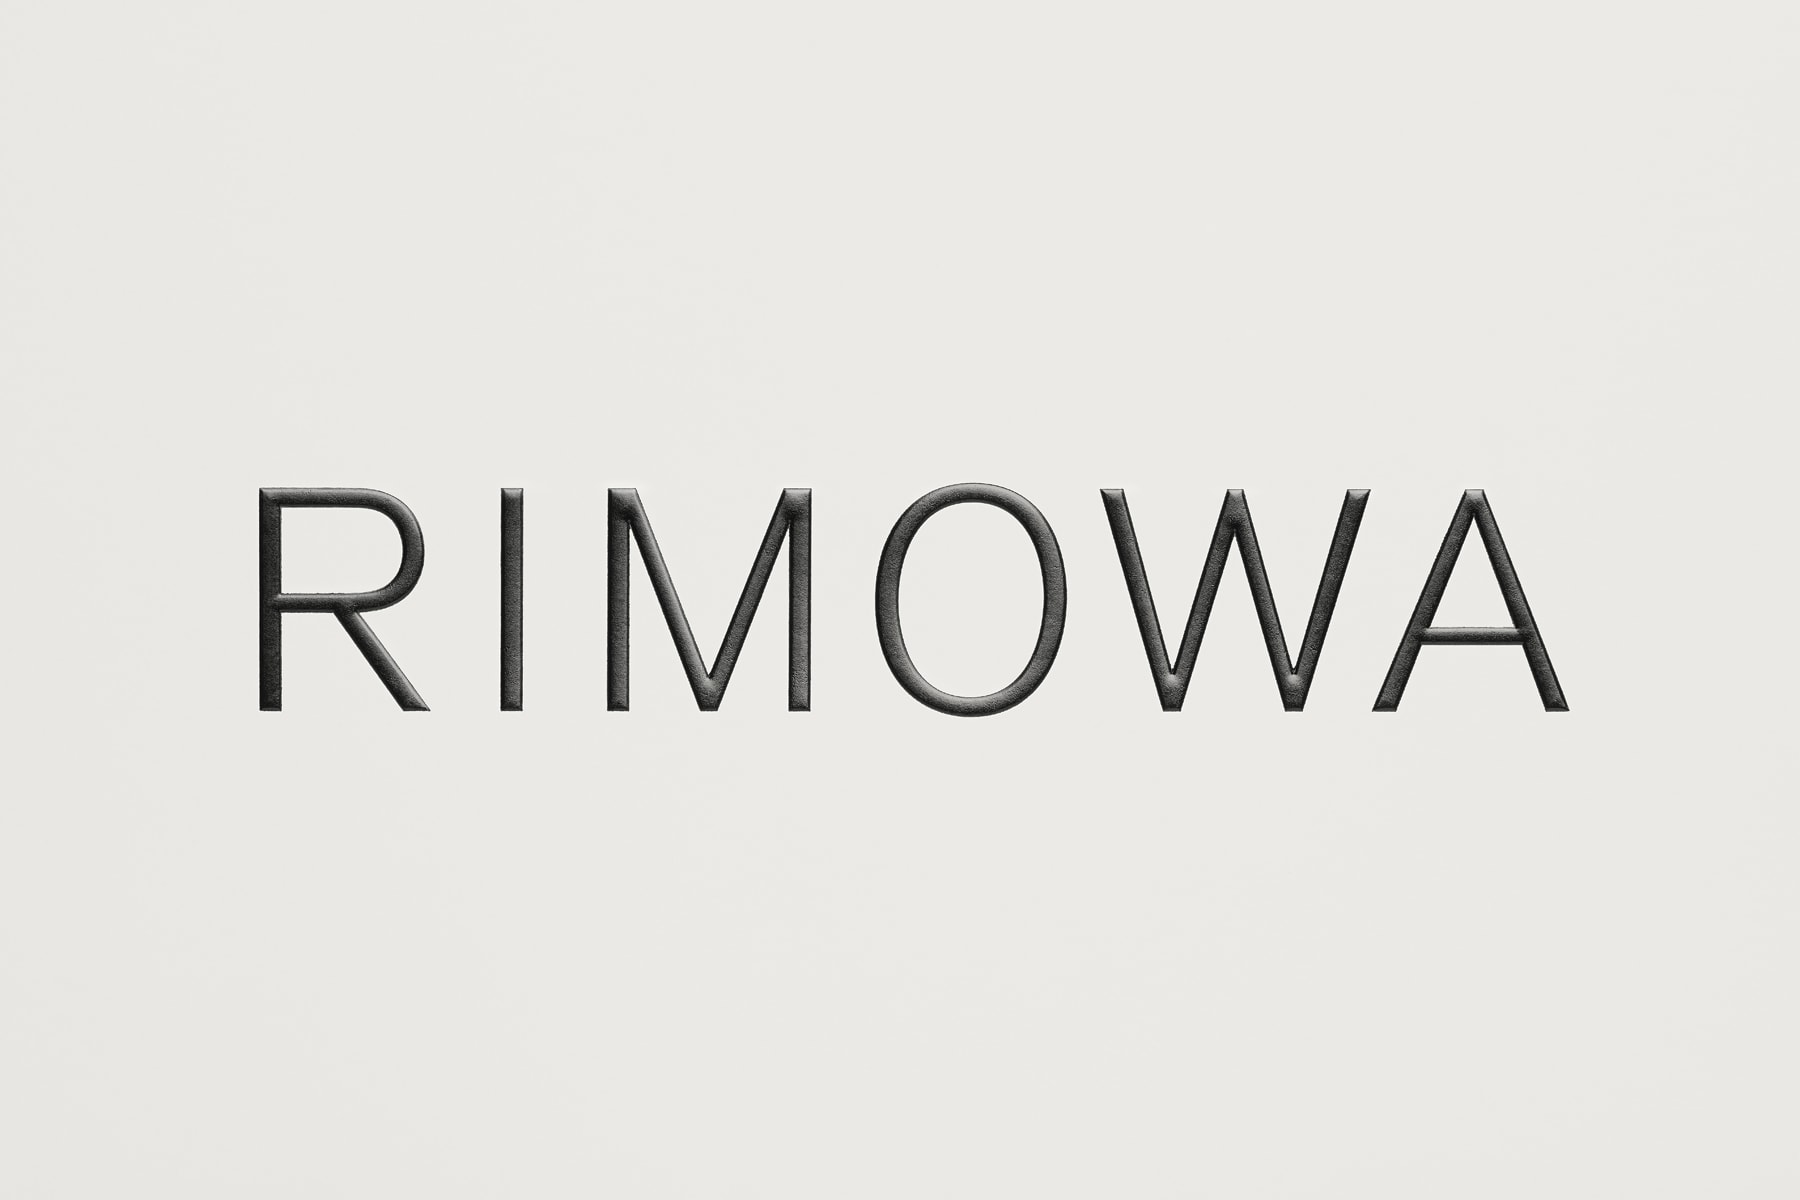 120 周年迎新－RIMOWA 更換全新品牌形象